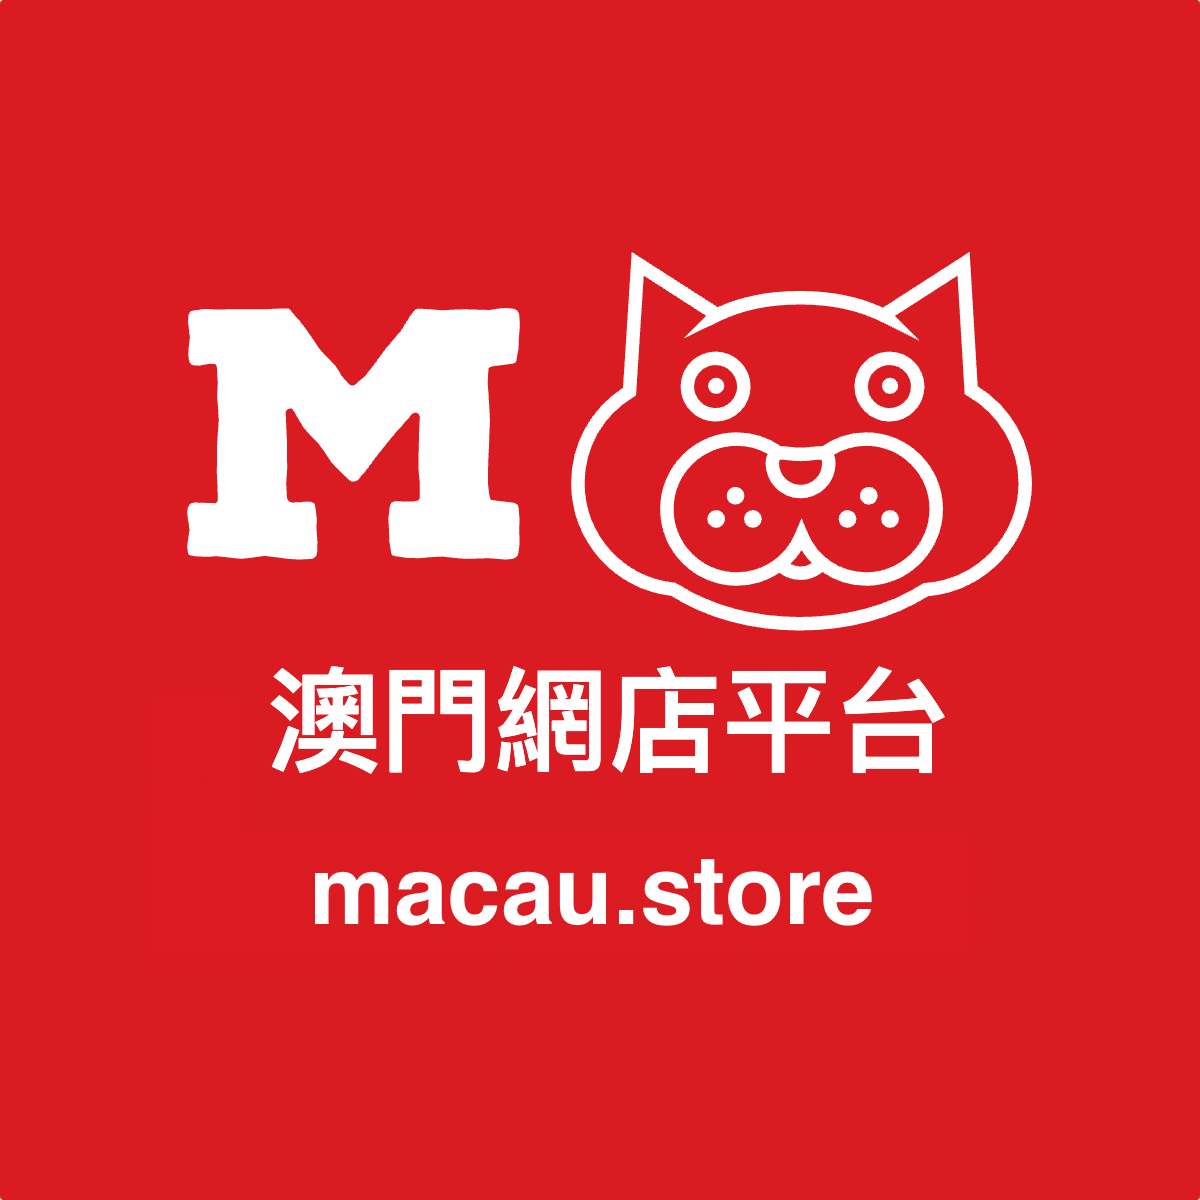 MacauStore